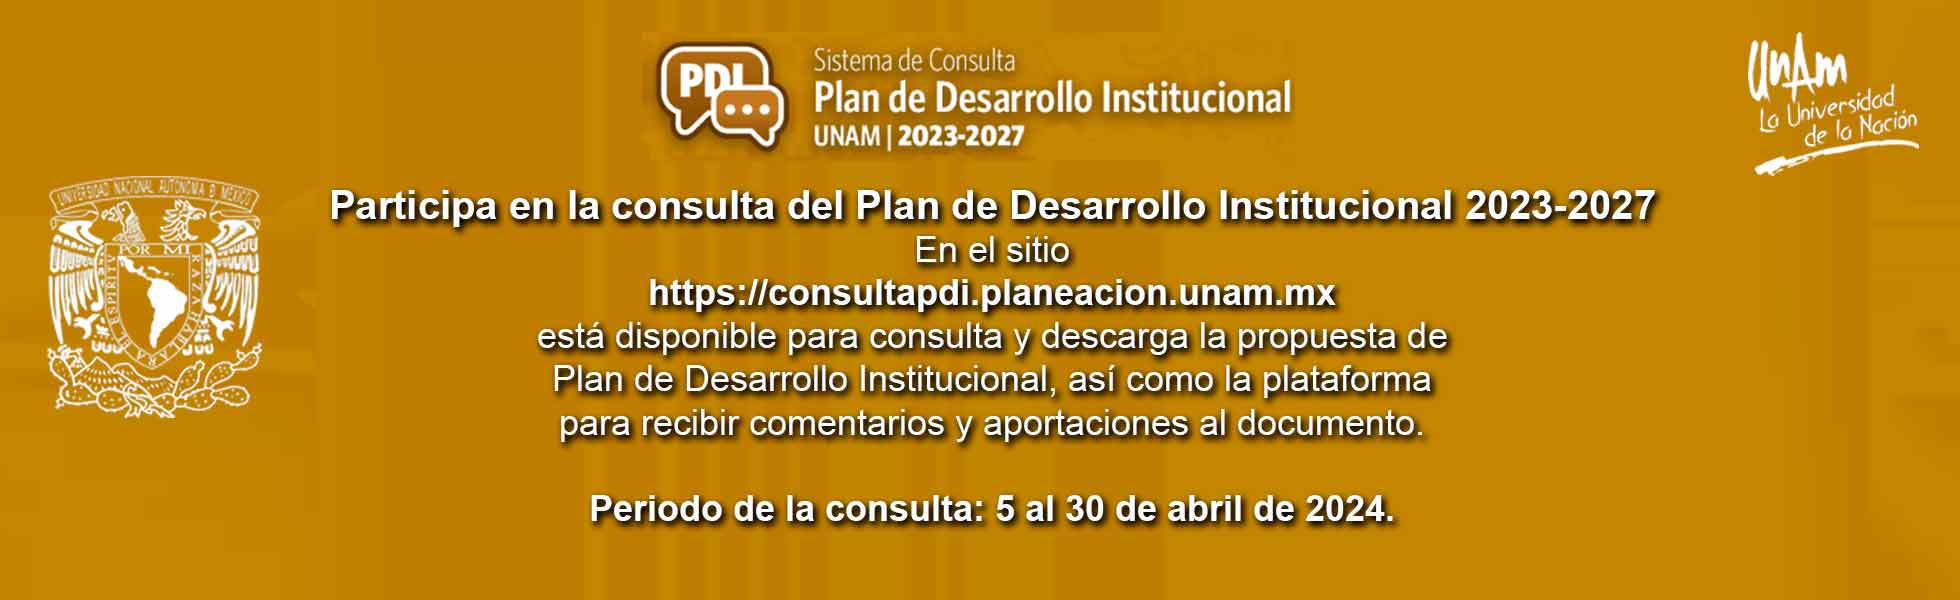 Consulta Plan de Desarrollo de la UNAM 2023-2027